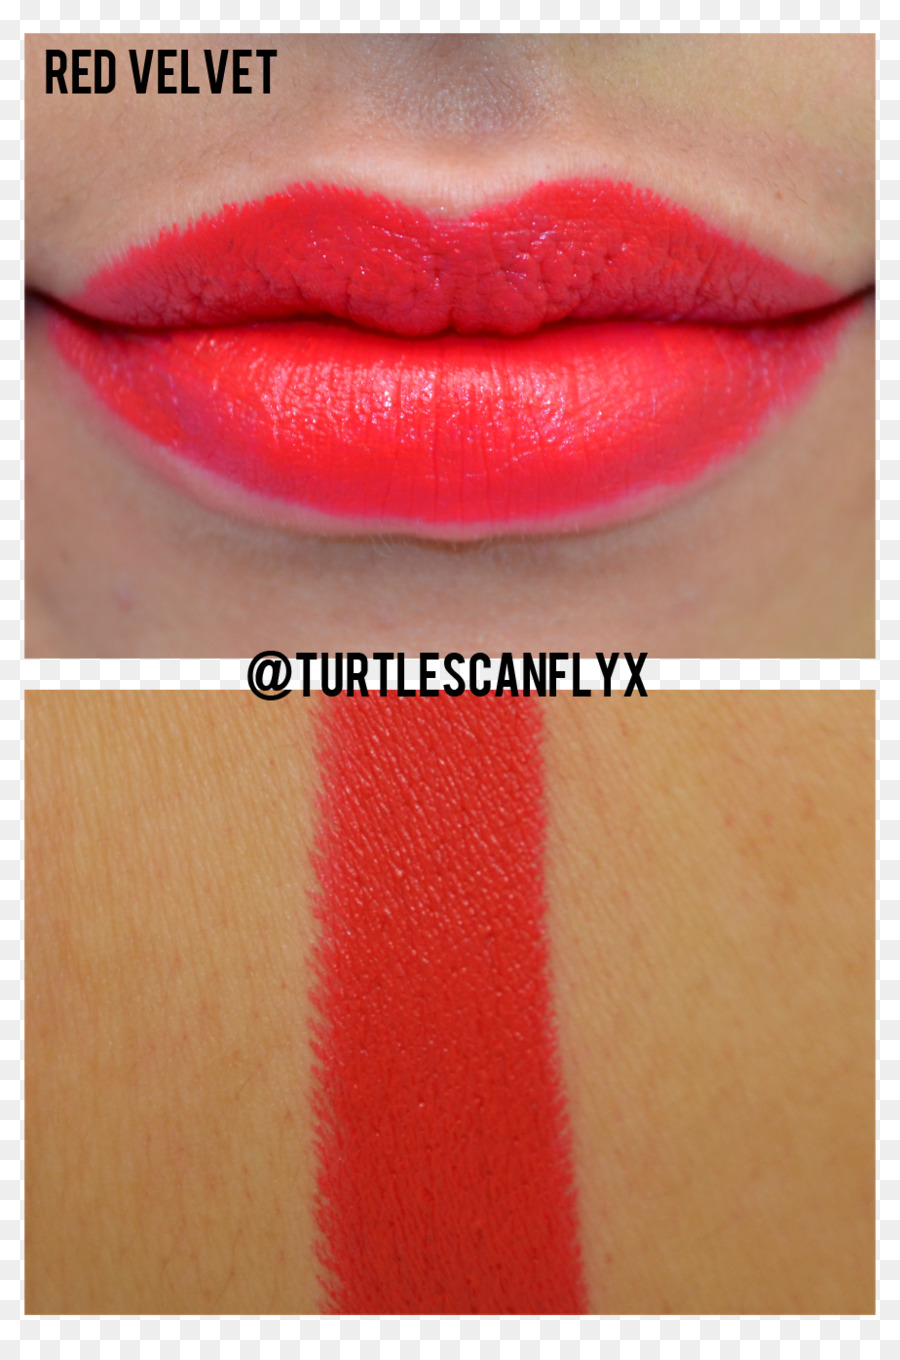 Lippenstift Lip gloss Close up Red Velvet - Lippenstift Swatch